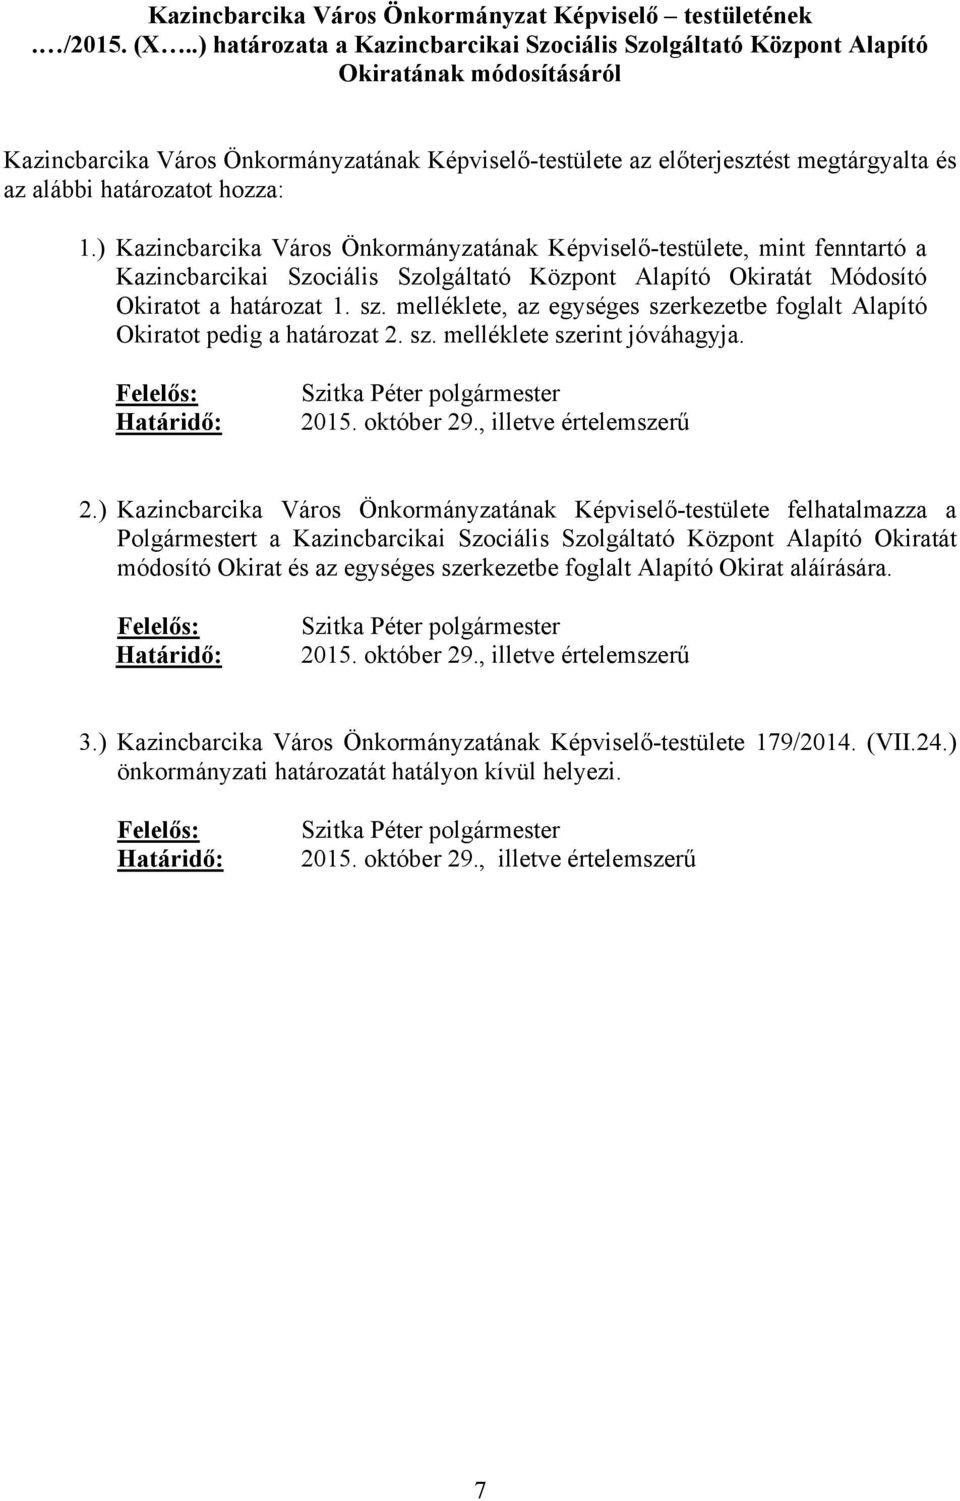 határozatot hozza: 1.) Kazincbarcika Város Önkormányzatának Képviselő-testülete, mint fenntartó a Kazincbarcikai Szociális Szolgáltató Központ Alapító Okiratát Módosító Okiratot a határozat 1. sz.